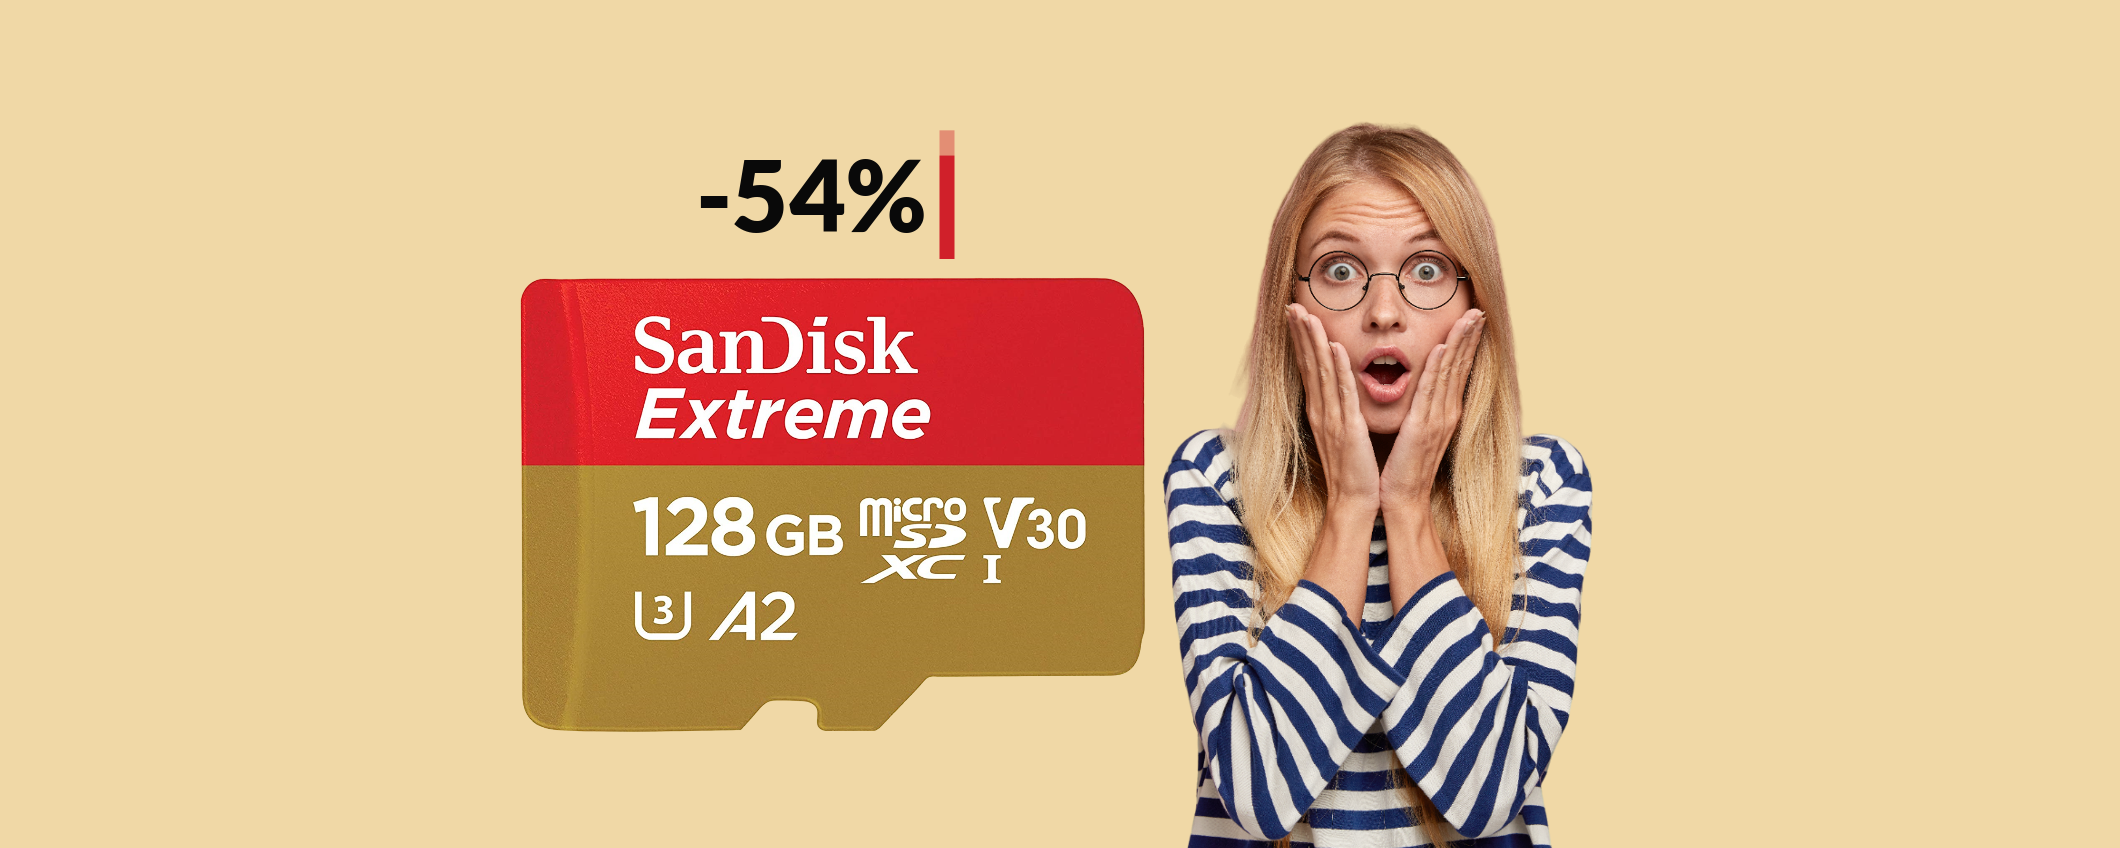 MicroSD 128GB SanDisk a meno di METÀ PREZZO: bastano 21€